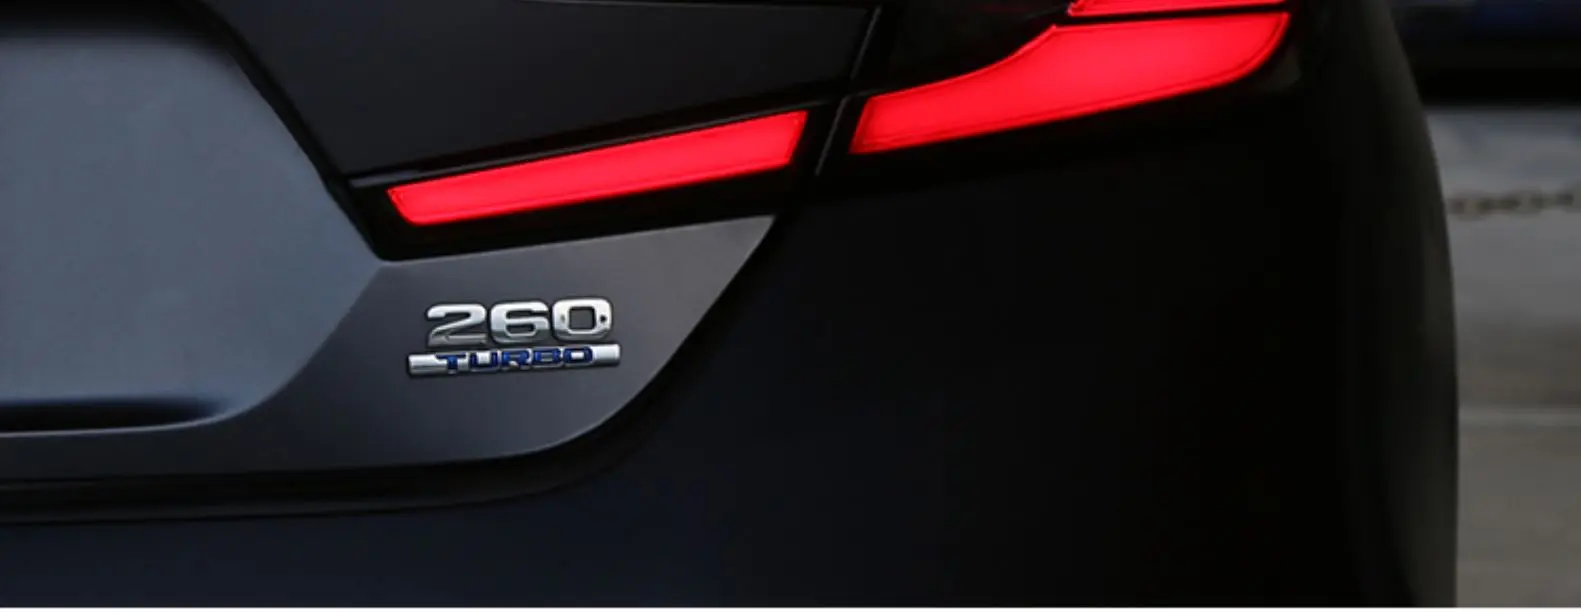 Автомобильный Стайлинг светодиодный фонарь для Honda Accord 10 задний противотуманный фонарь+ стоп-сигнал+ задний фонарь+ Динамический сигнал поворота